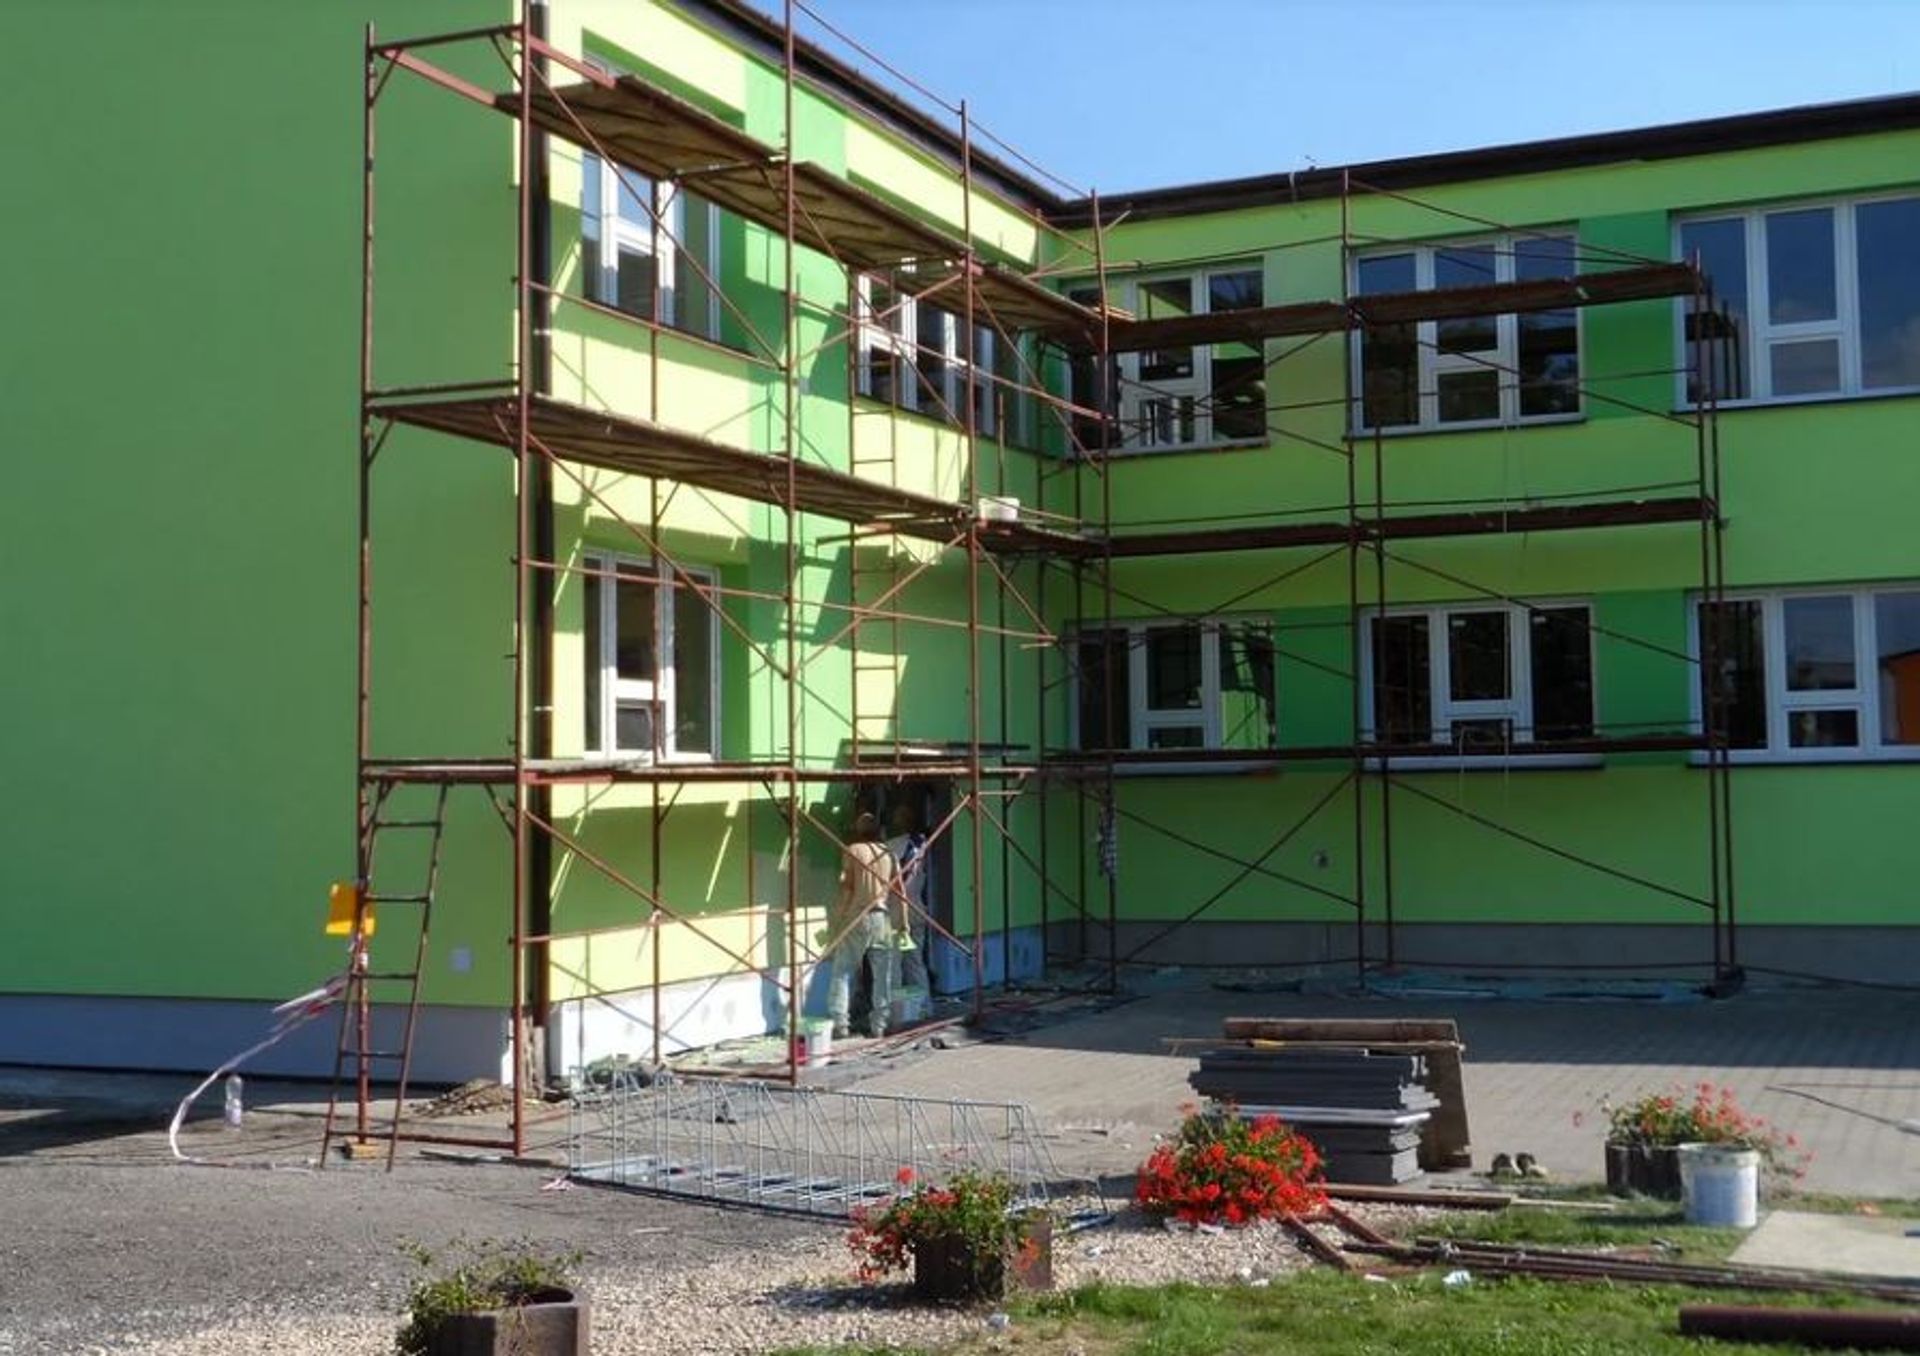 We Wrocławiu trwają wakacyjne remonty w około 80 szkołach i 17 żłobkach